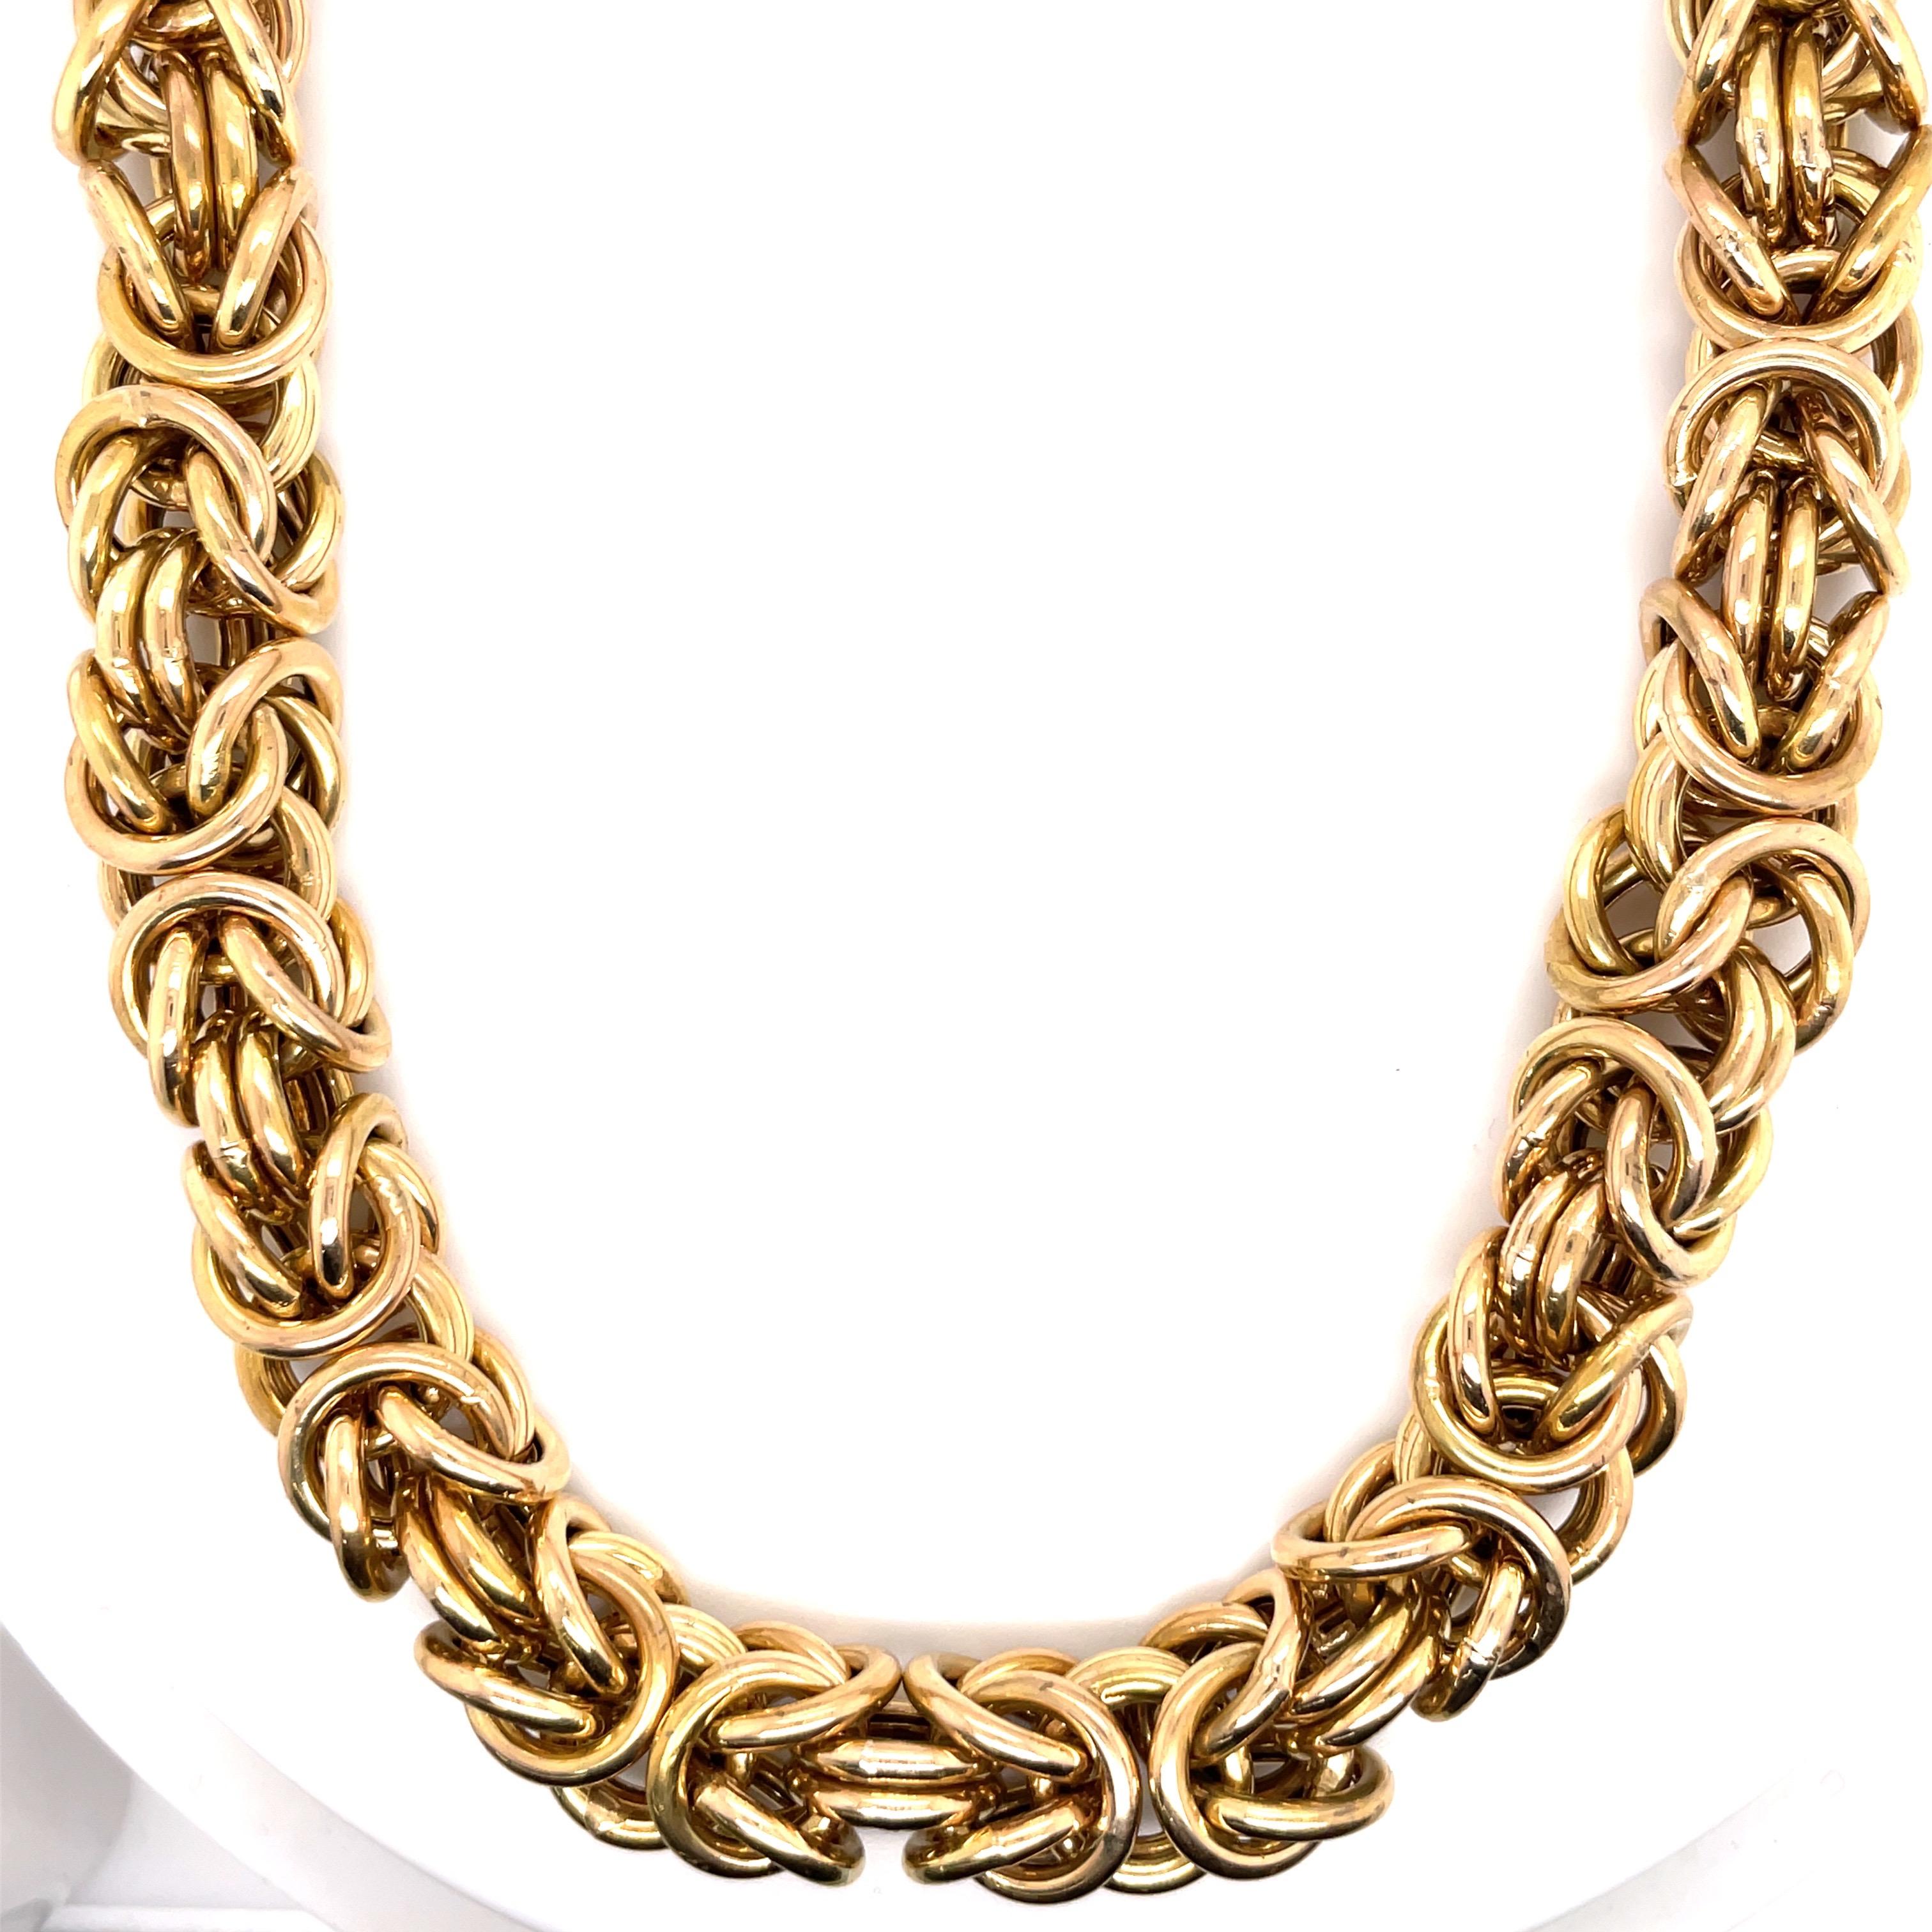 14 Karat Gelbgold Halskette mit einem breiten byzantinischen Stil Link Messung 17,5 Zoll und einem Gewicht von 105,6 Gramm.
Sehr angenehm im Nacken. 